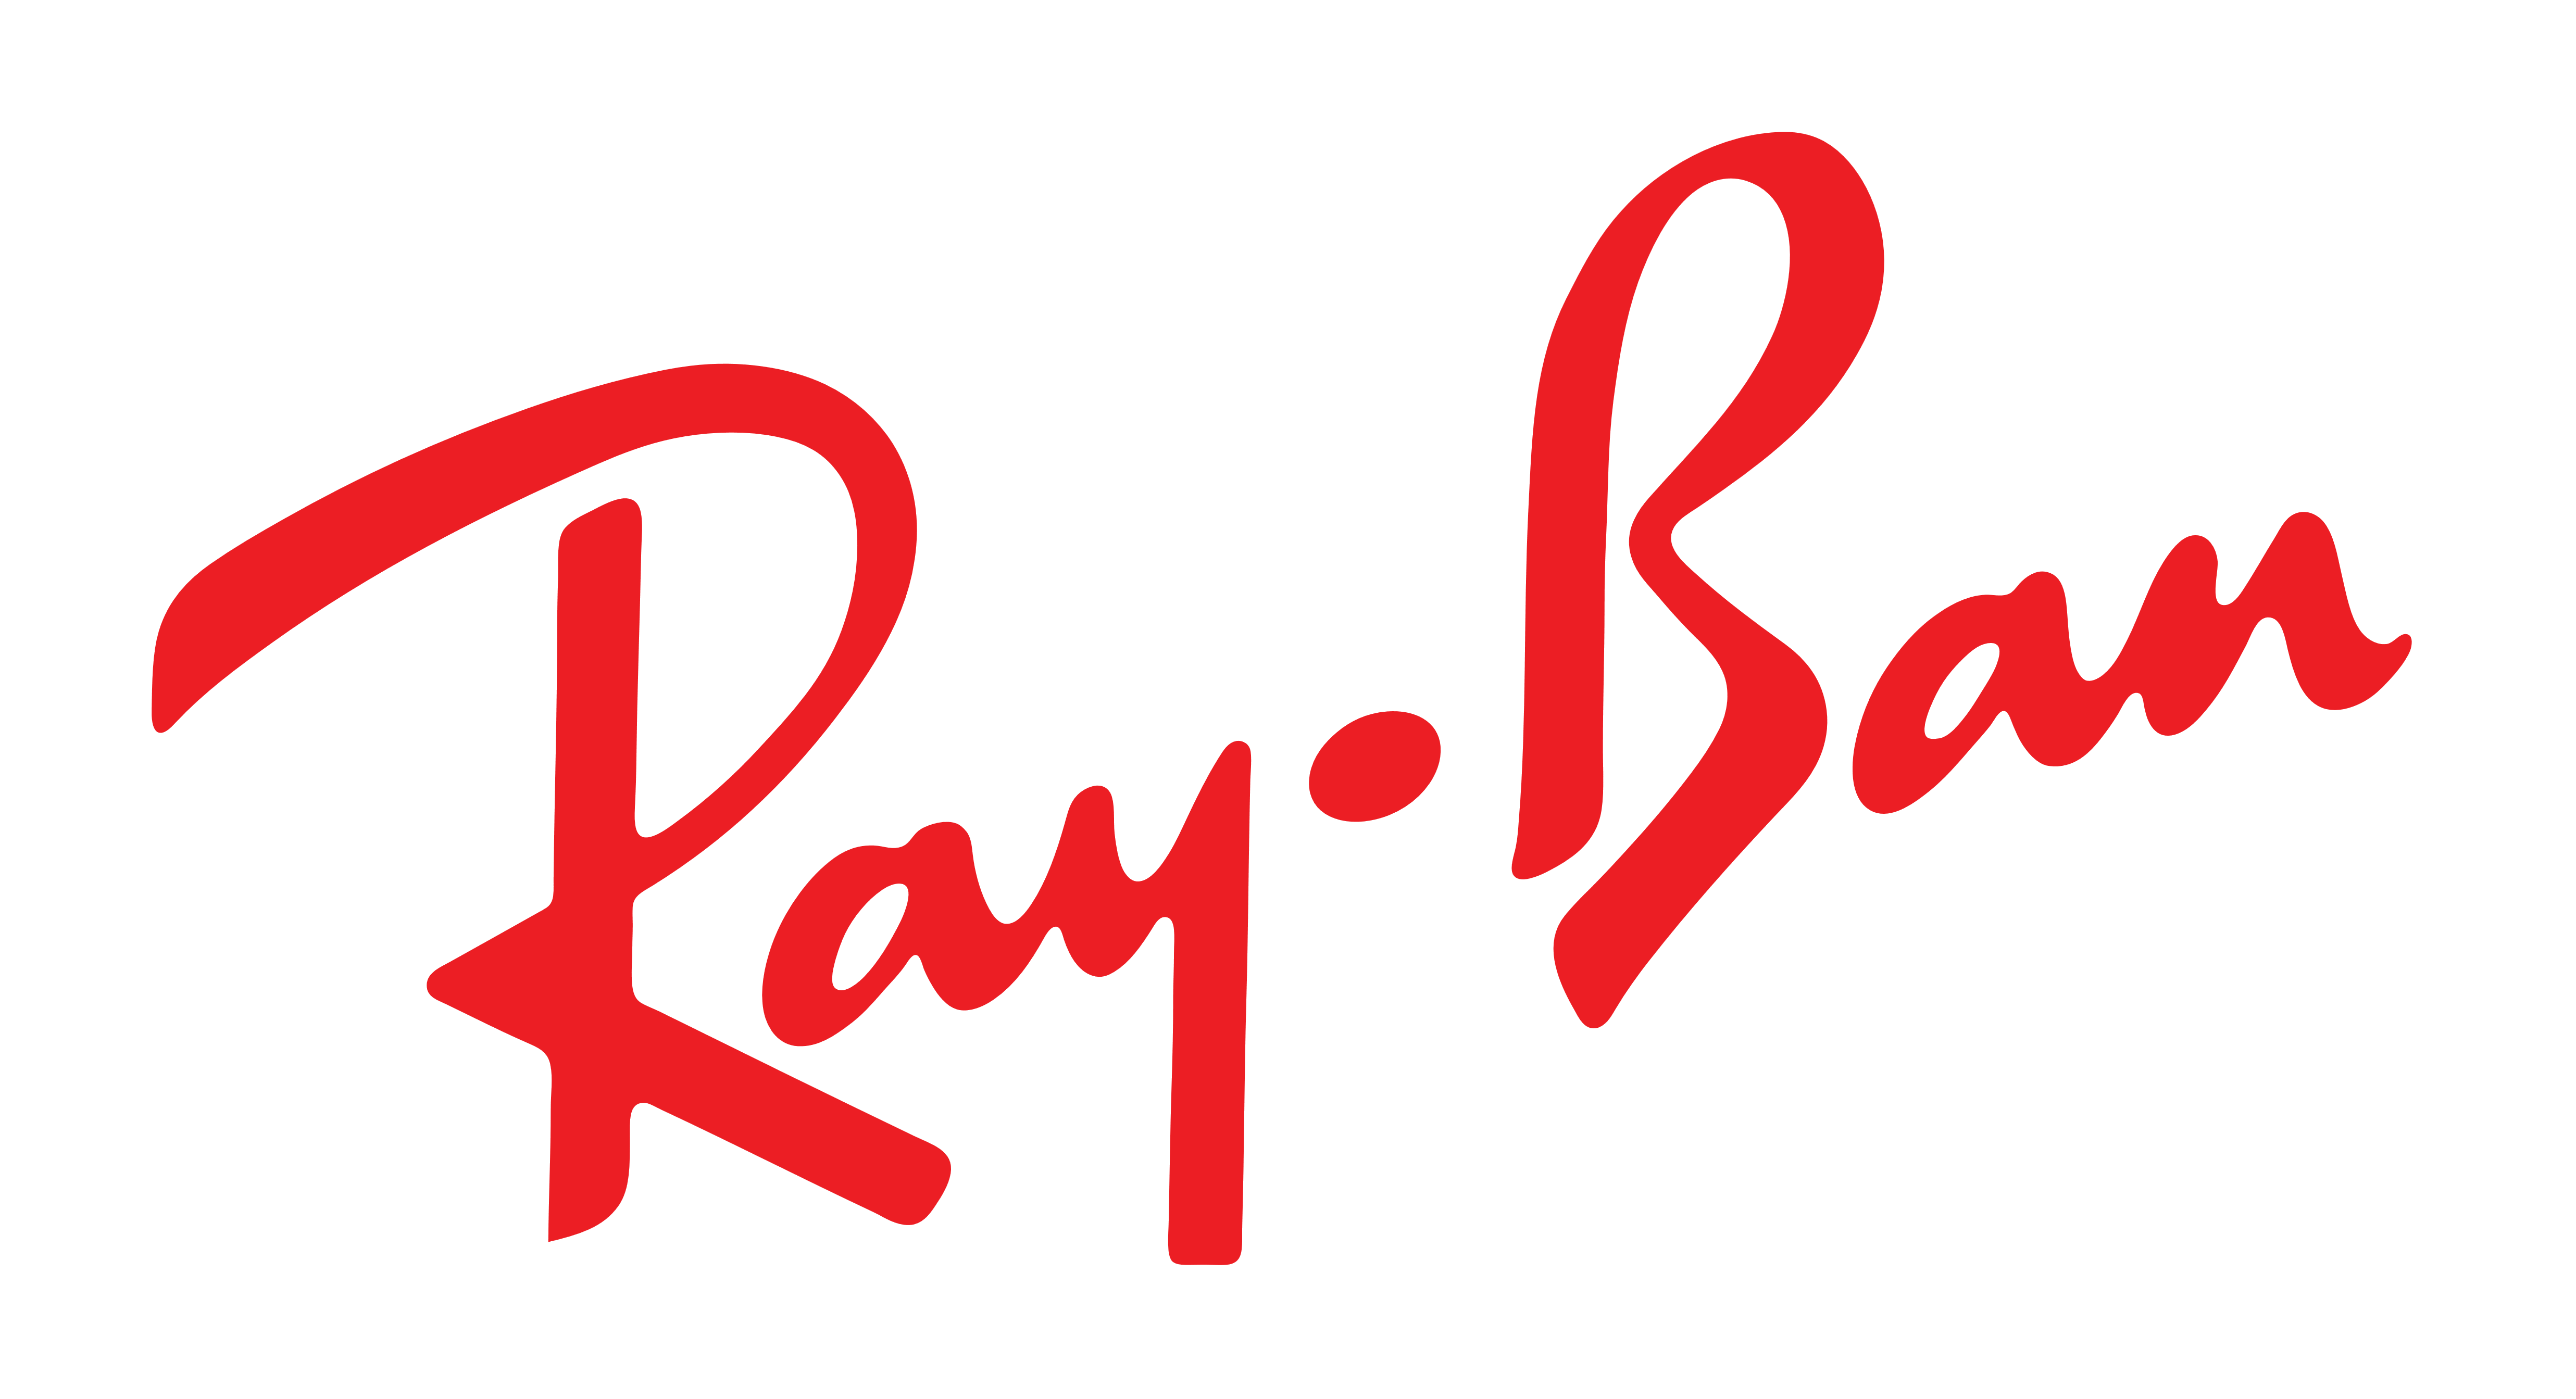 Red Logo - Ray-Ban – Logos Download